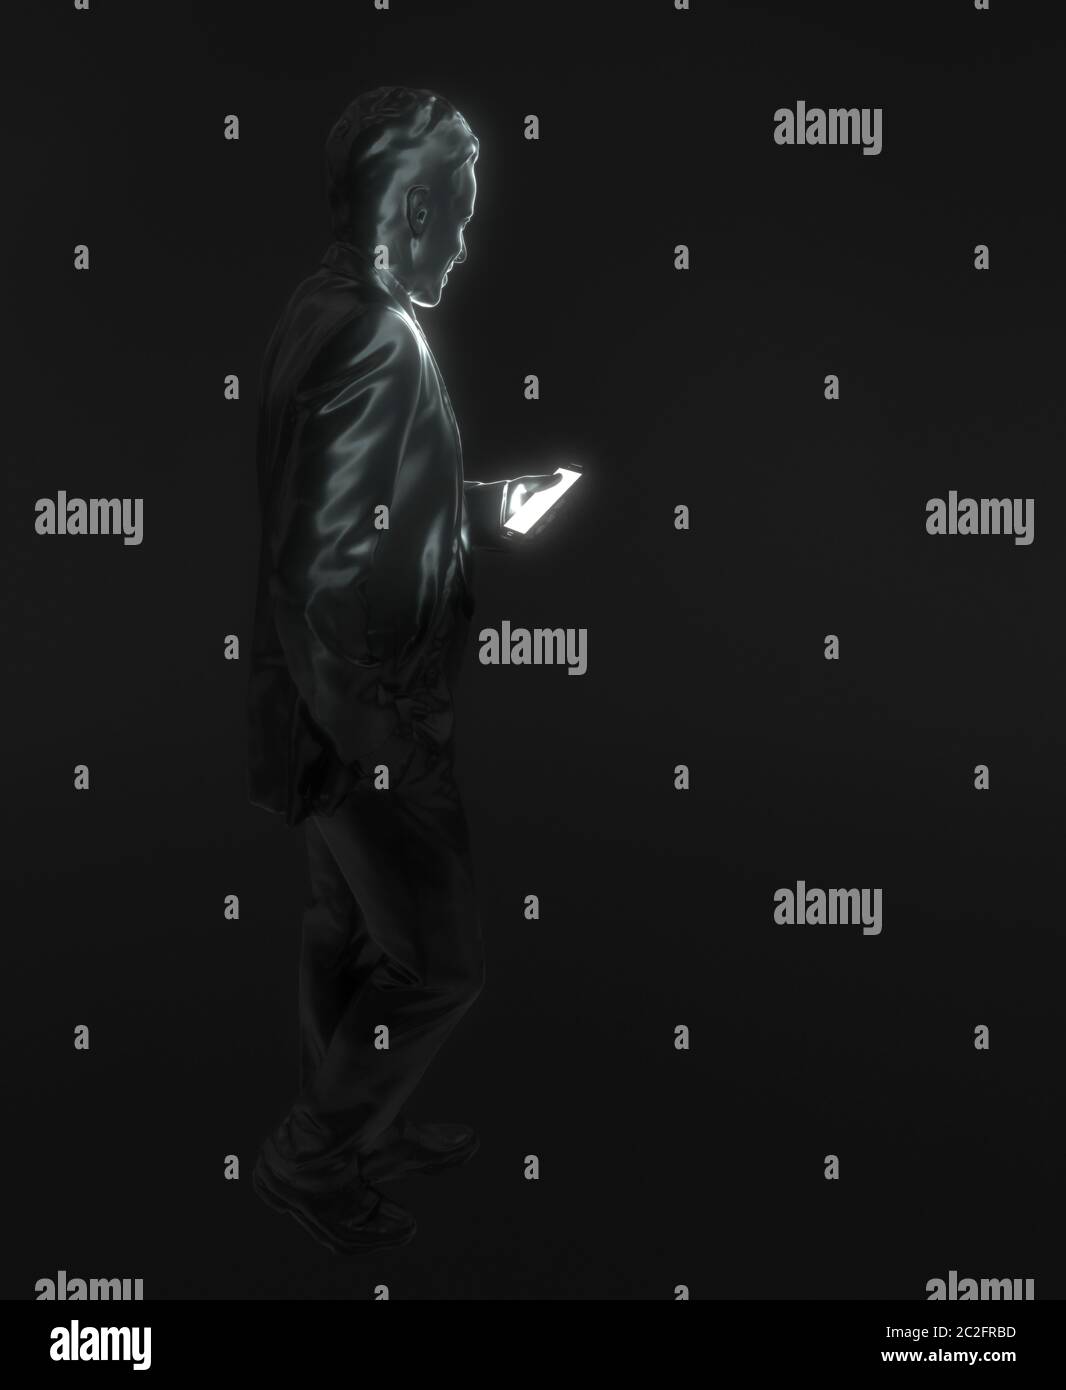 Die Figur des Menschen hält ein Smartphone in der Hand. Eine schwarze Statue eines Mannes auf schwarzem Hintergrund sieht auf den hellen Bildschirm eines Mobiltelefons. Moderne Ausstattung Stockfoto